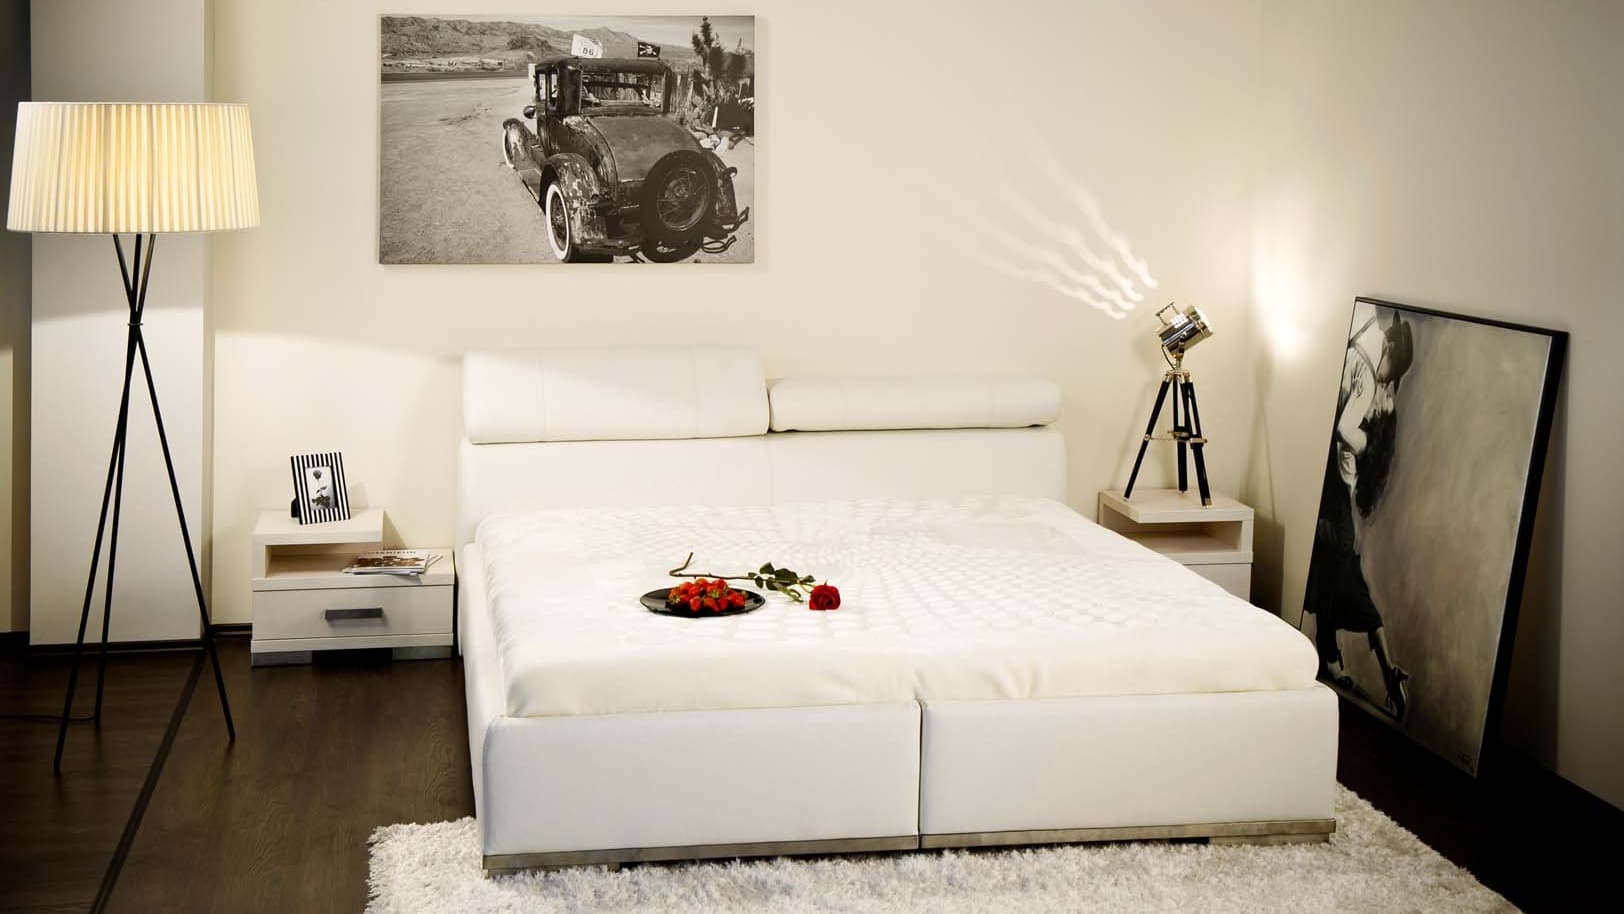 Fontos tudni, hogy a matrac méretét Te választod ki az ágynál, akár szokványostól eltérő méret is lehet ez.
